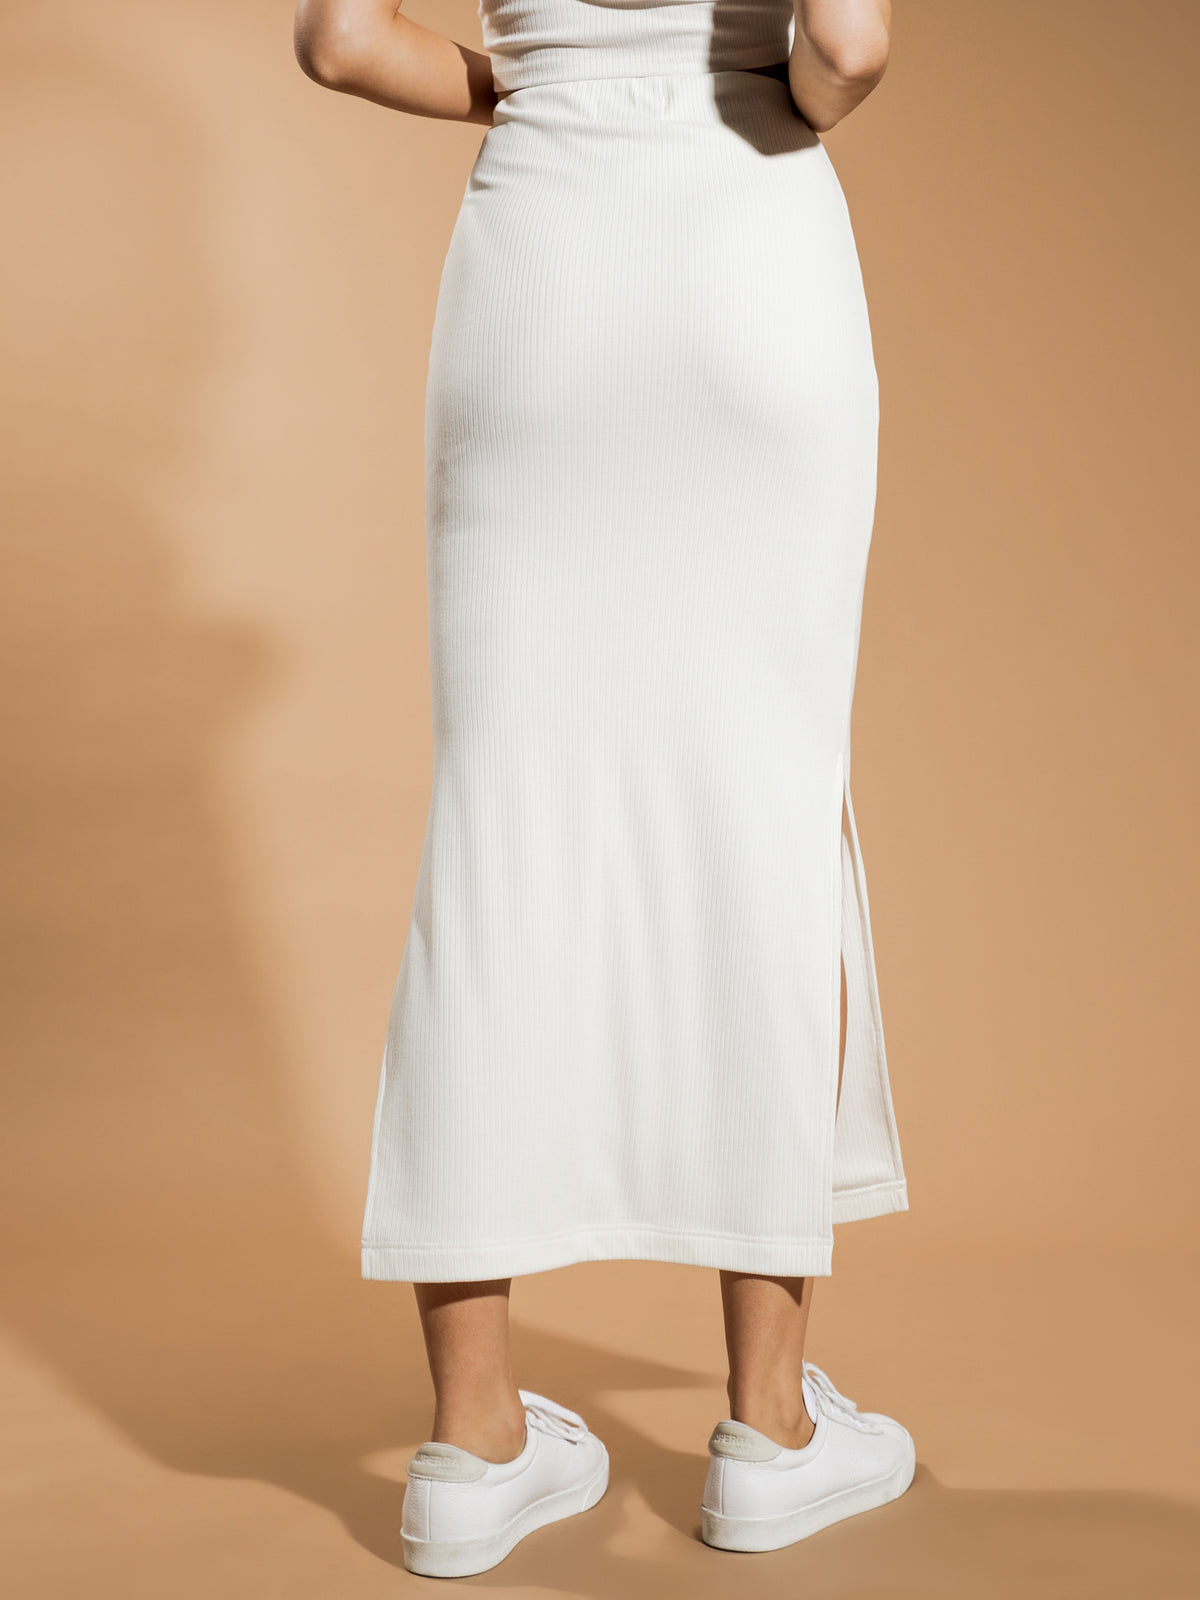 Gia Midi Skirt in White